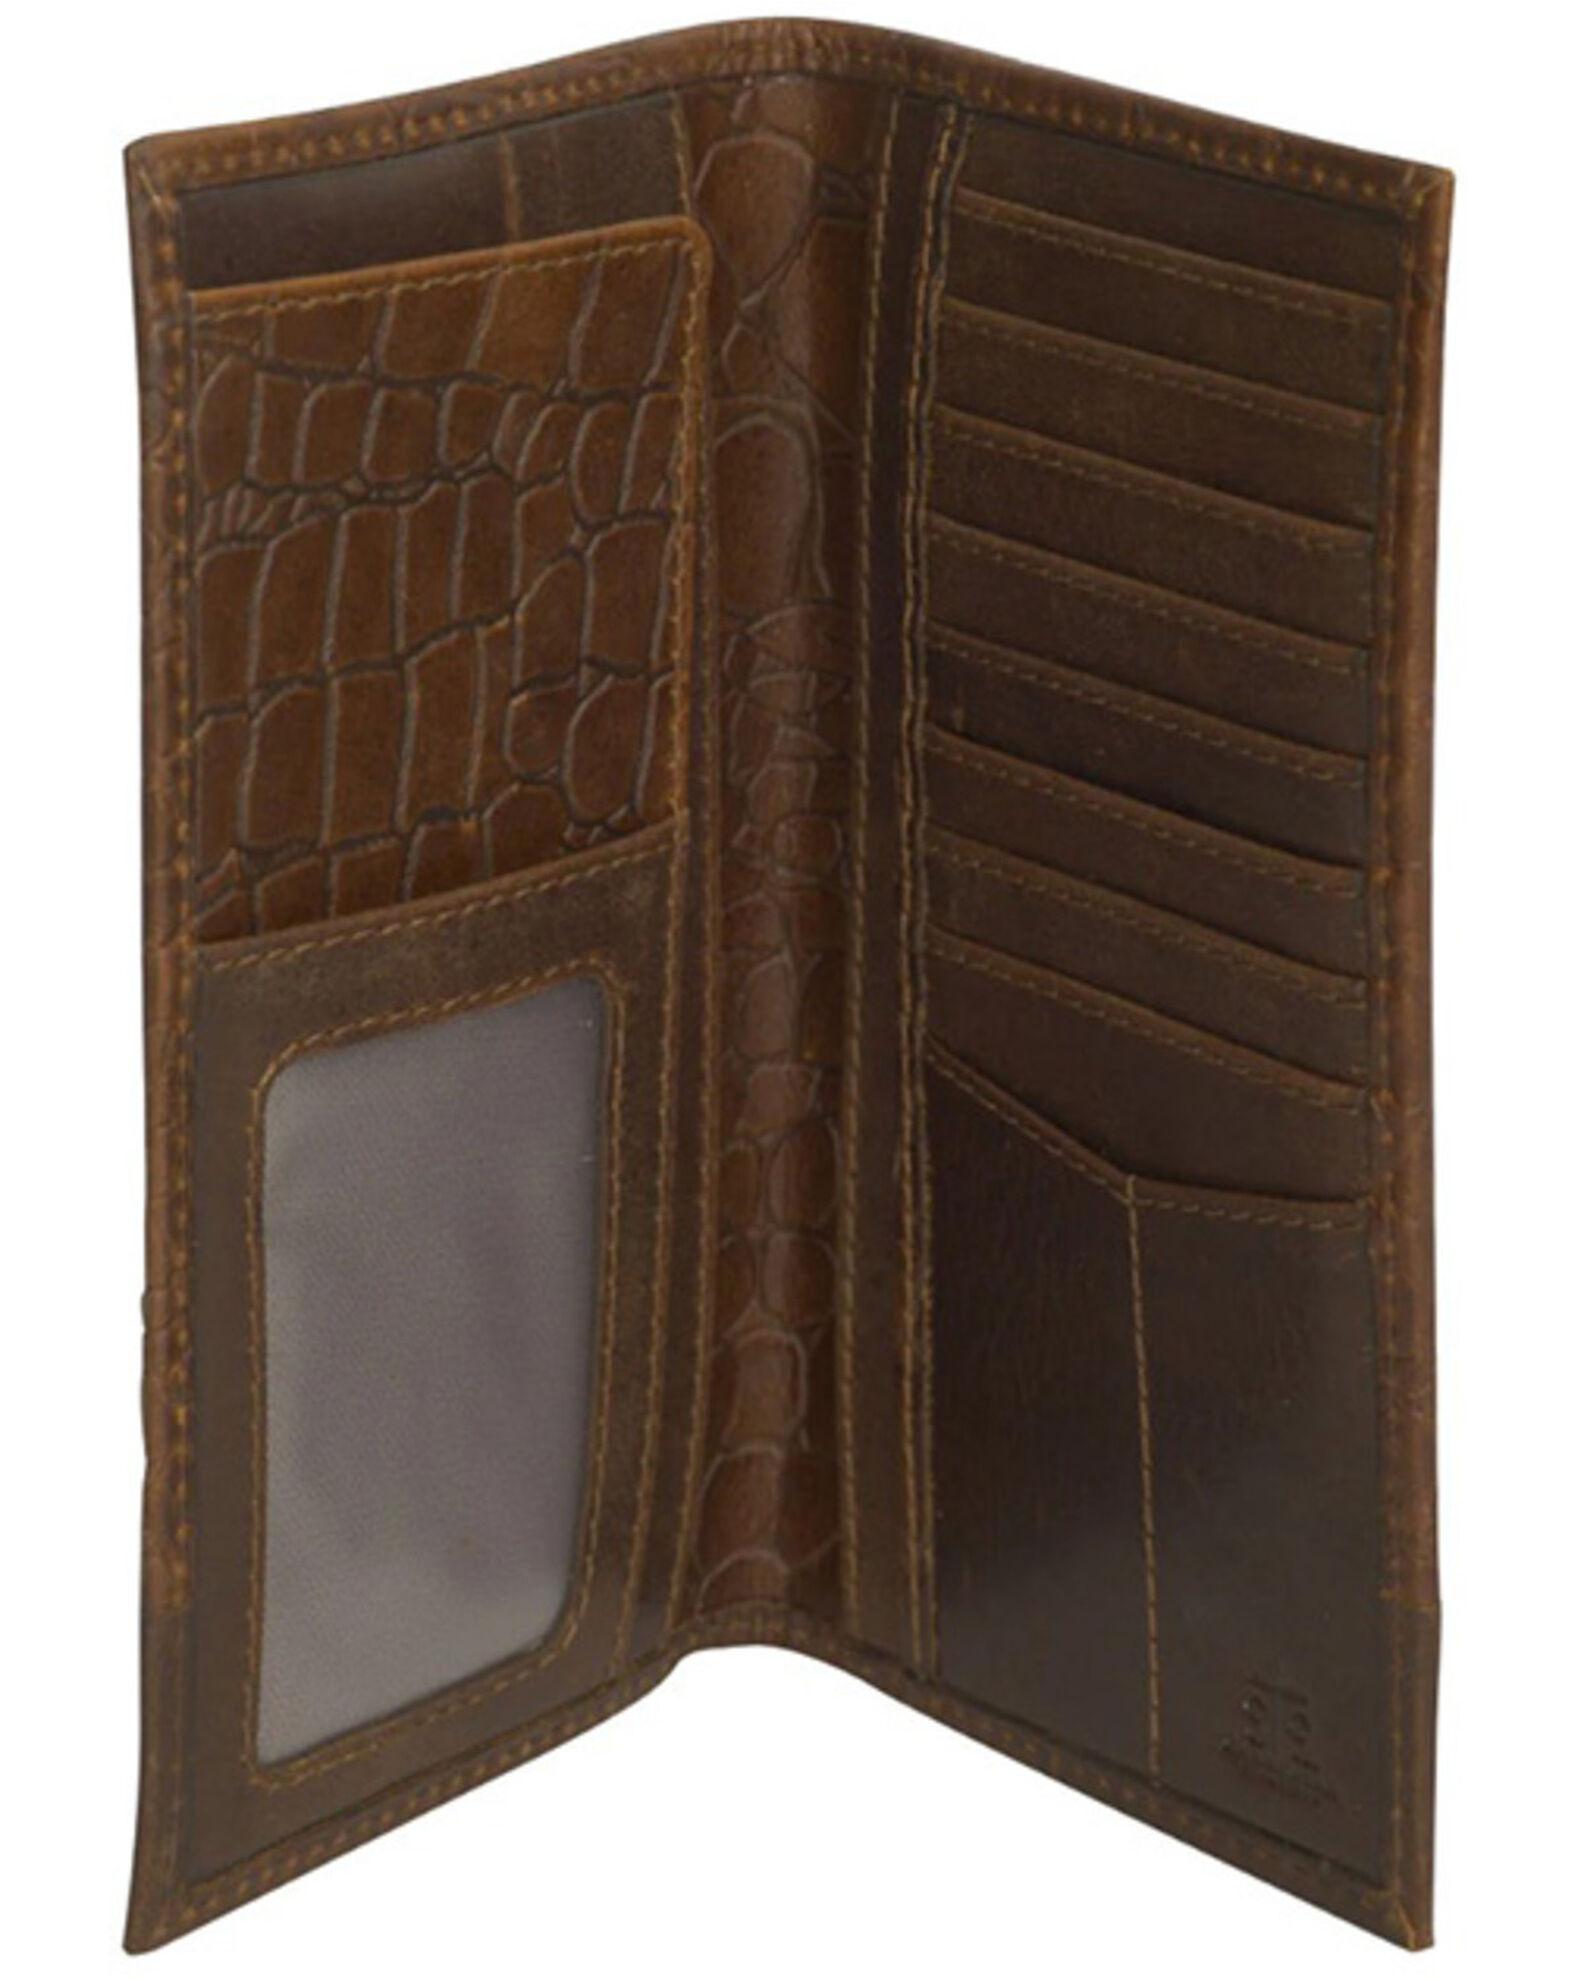 STS Ranchwear by Carroll Men's Croc Long Bi-Fold Wallet